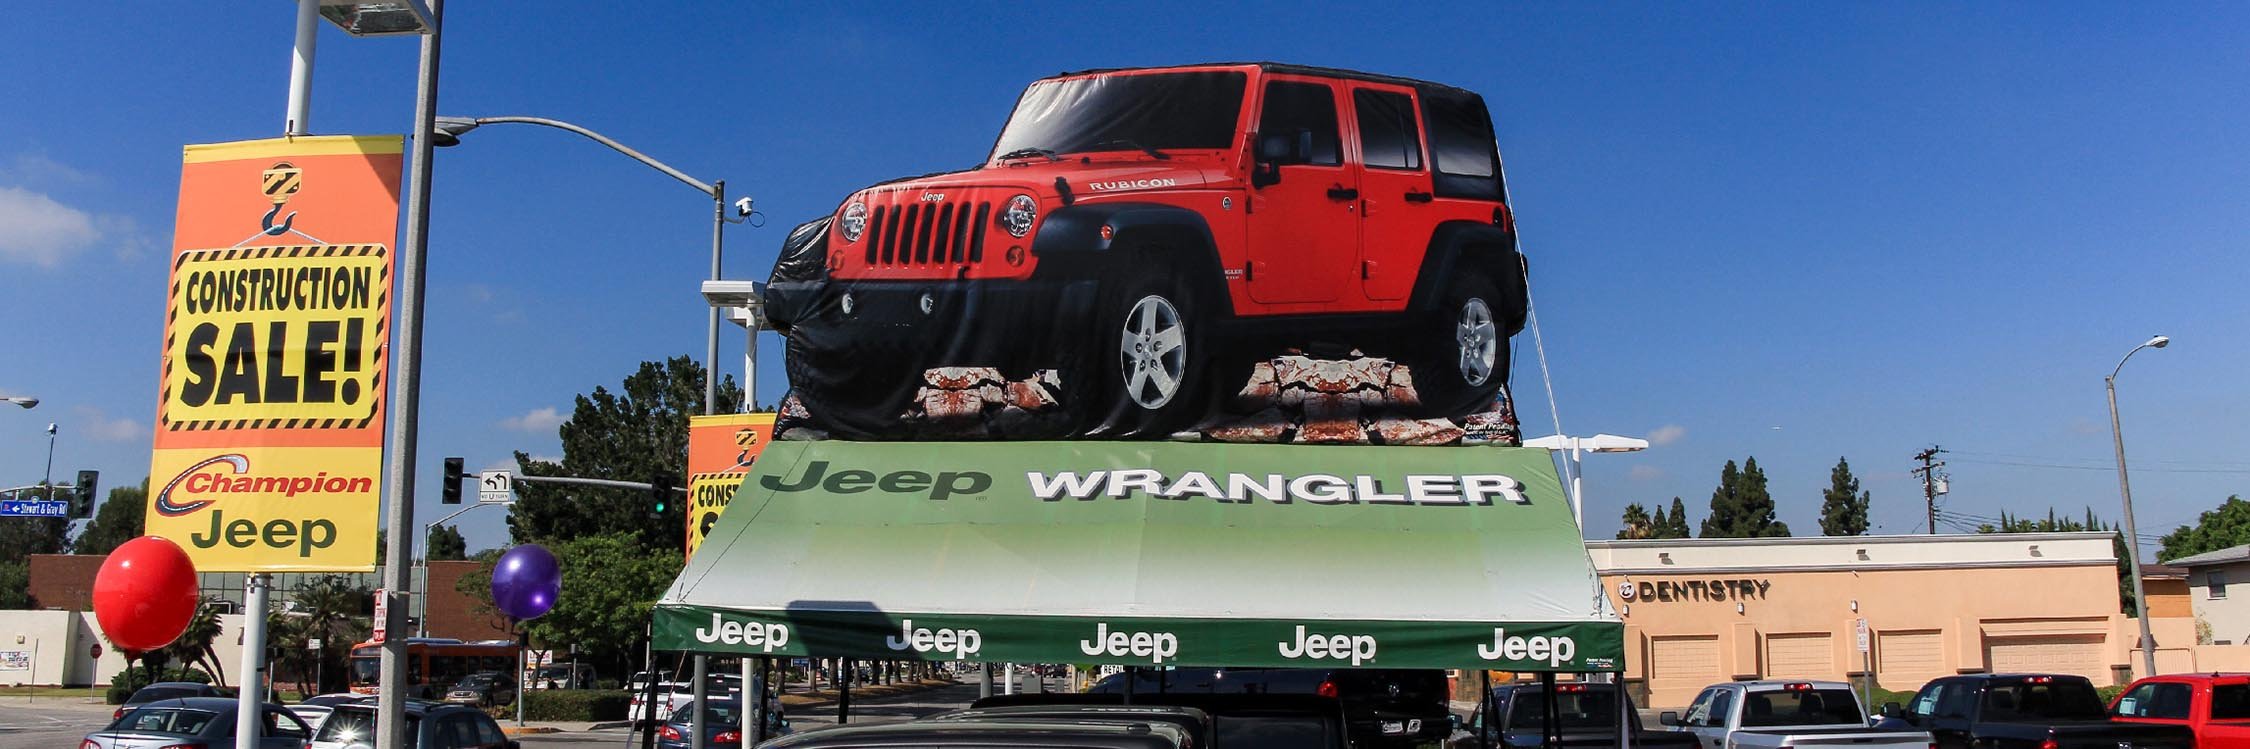 jeep-wrangler-header-01.jpg